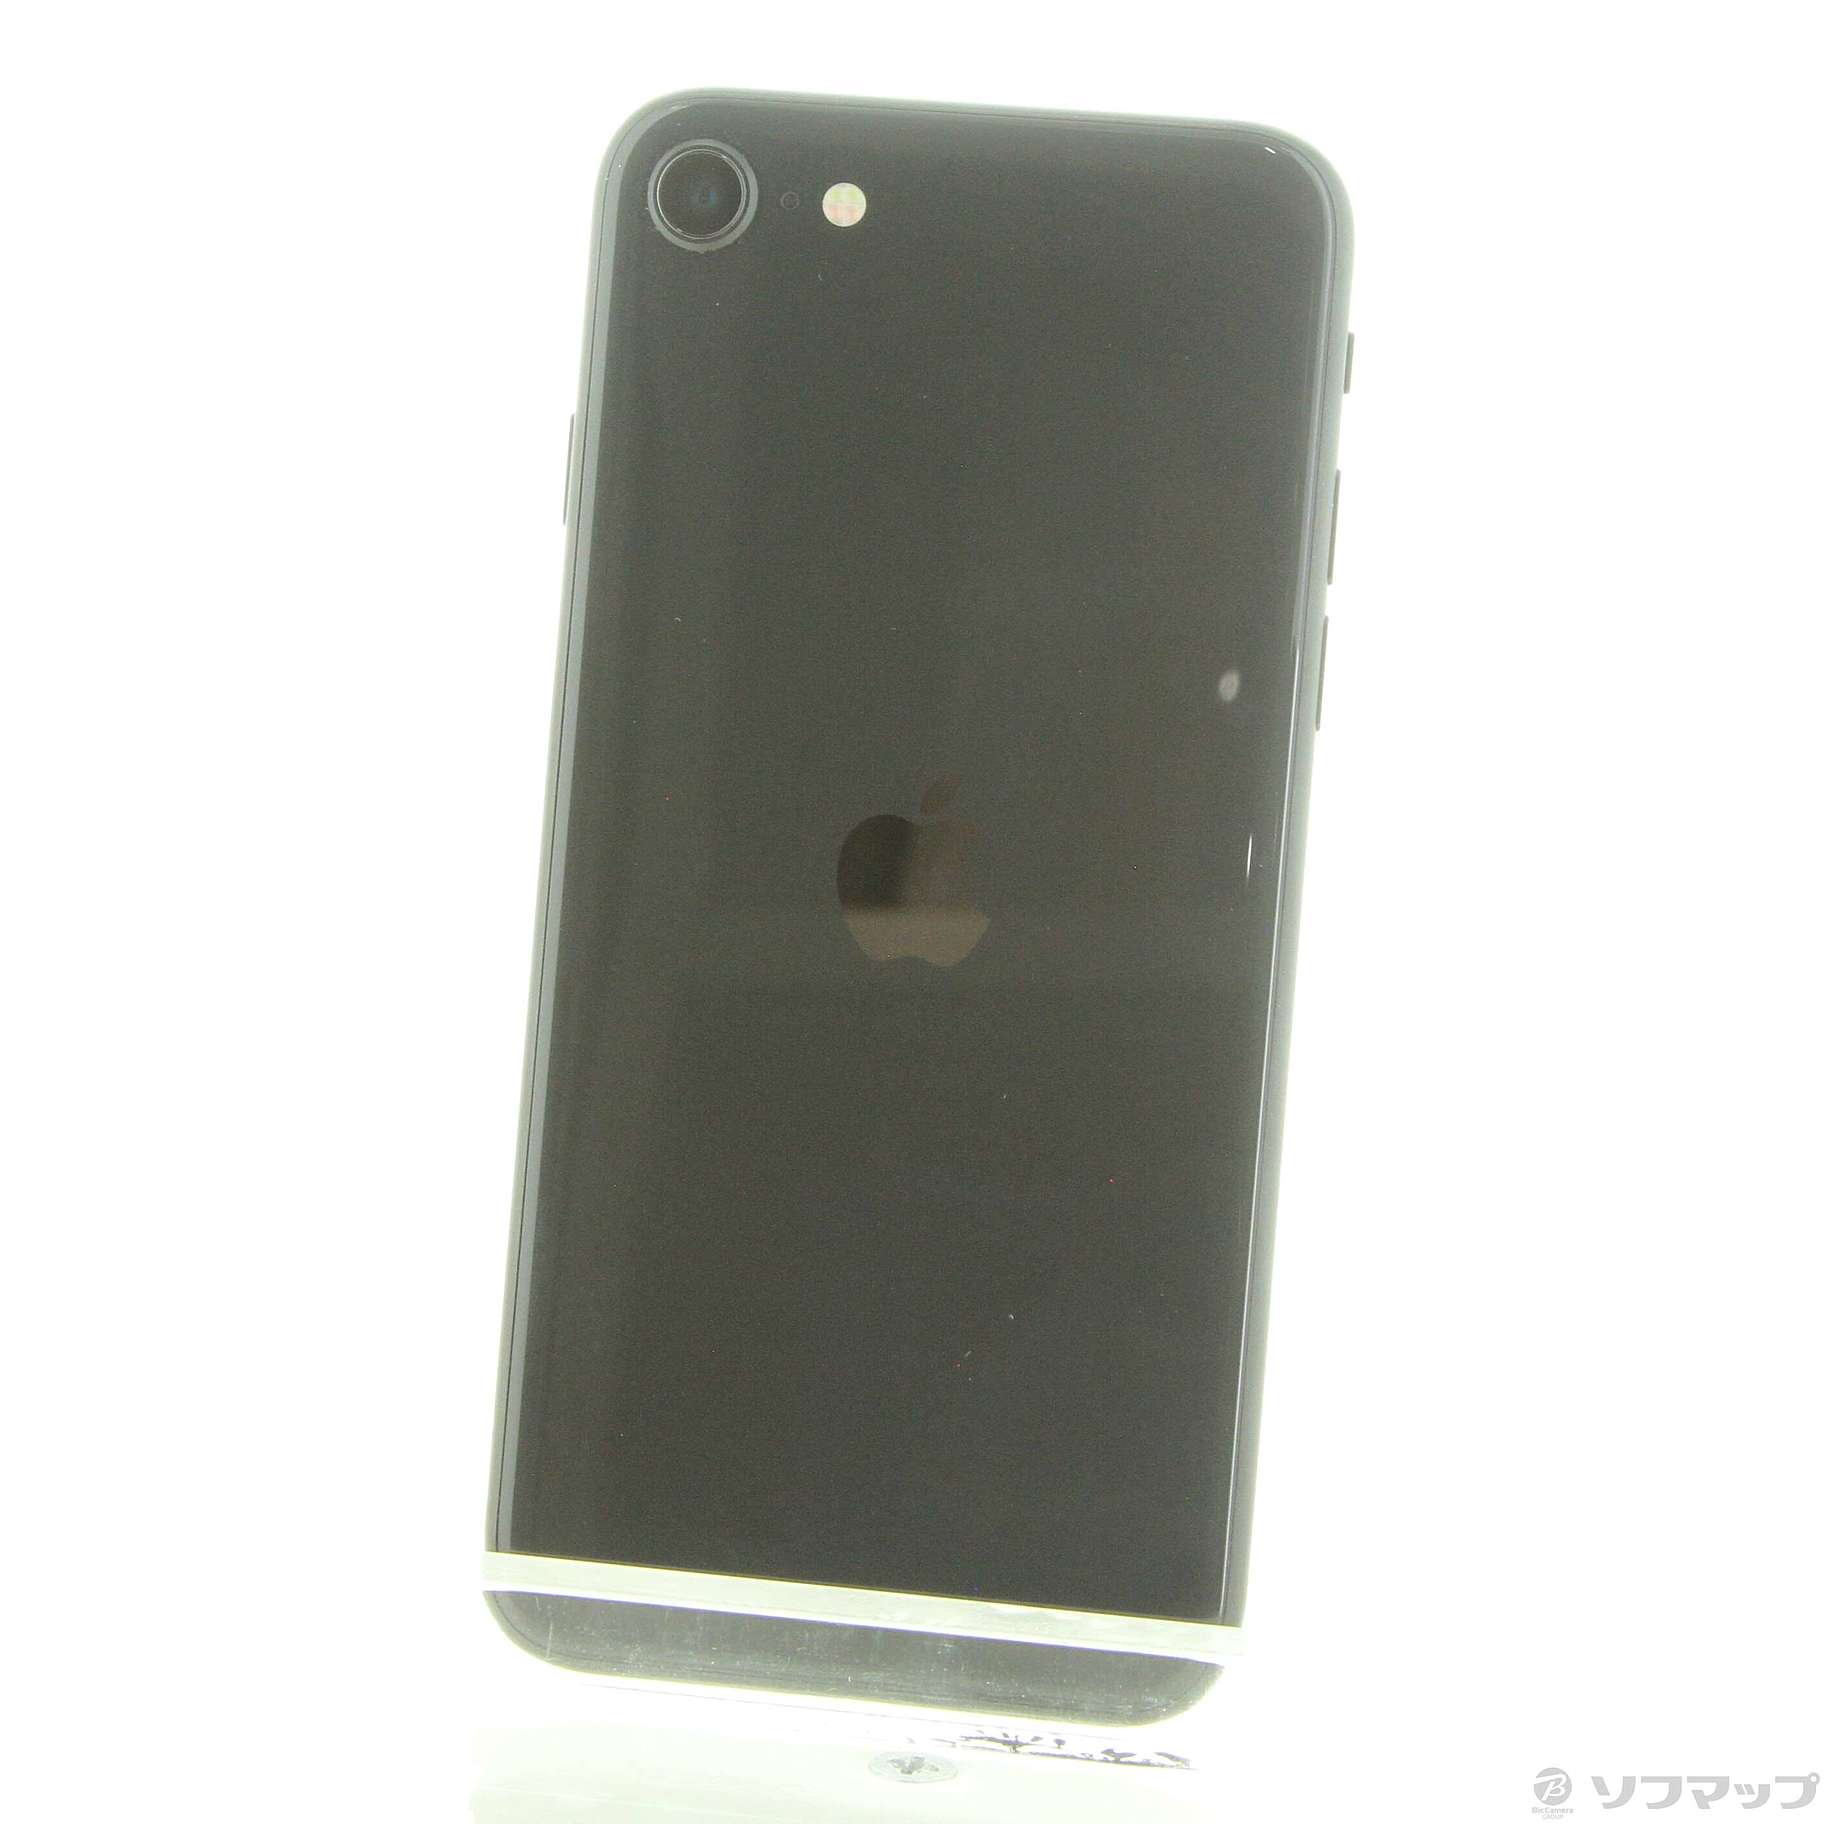 Apple iPhone SE 第2世代 128GB ブラック MXD02J/A SIMフリー(297-ud ...